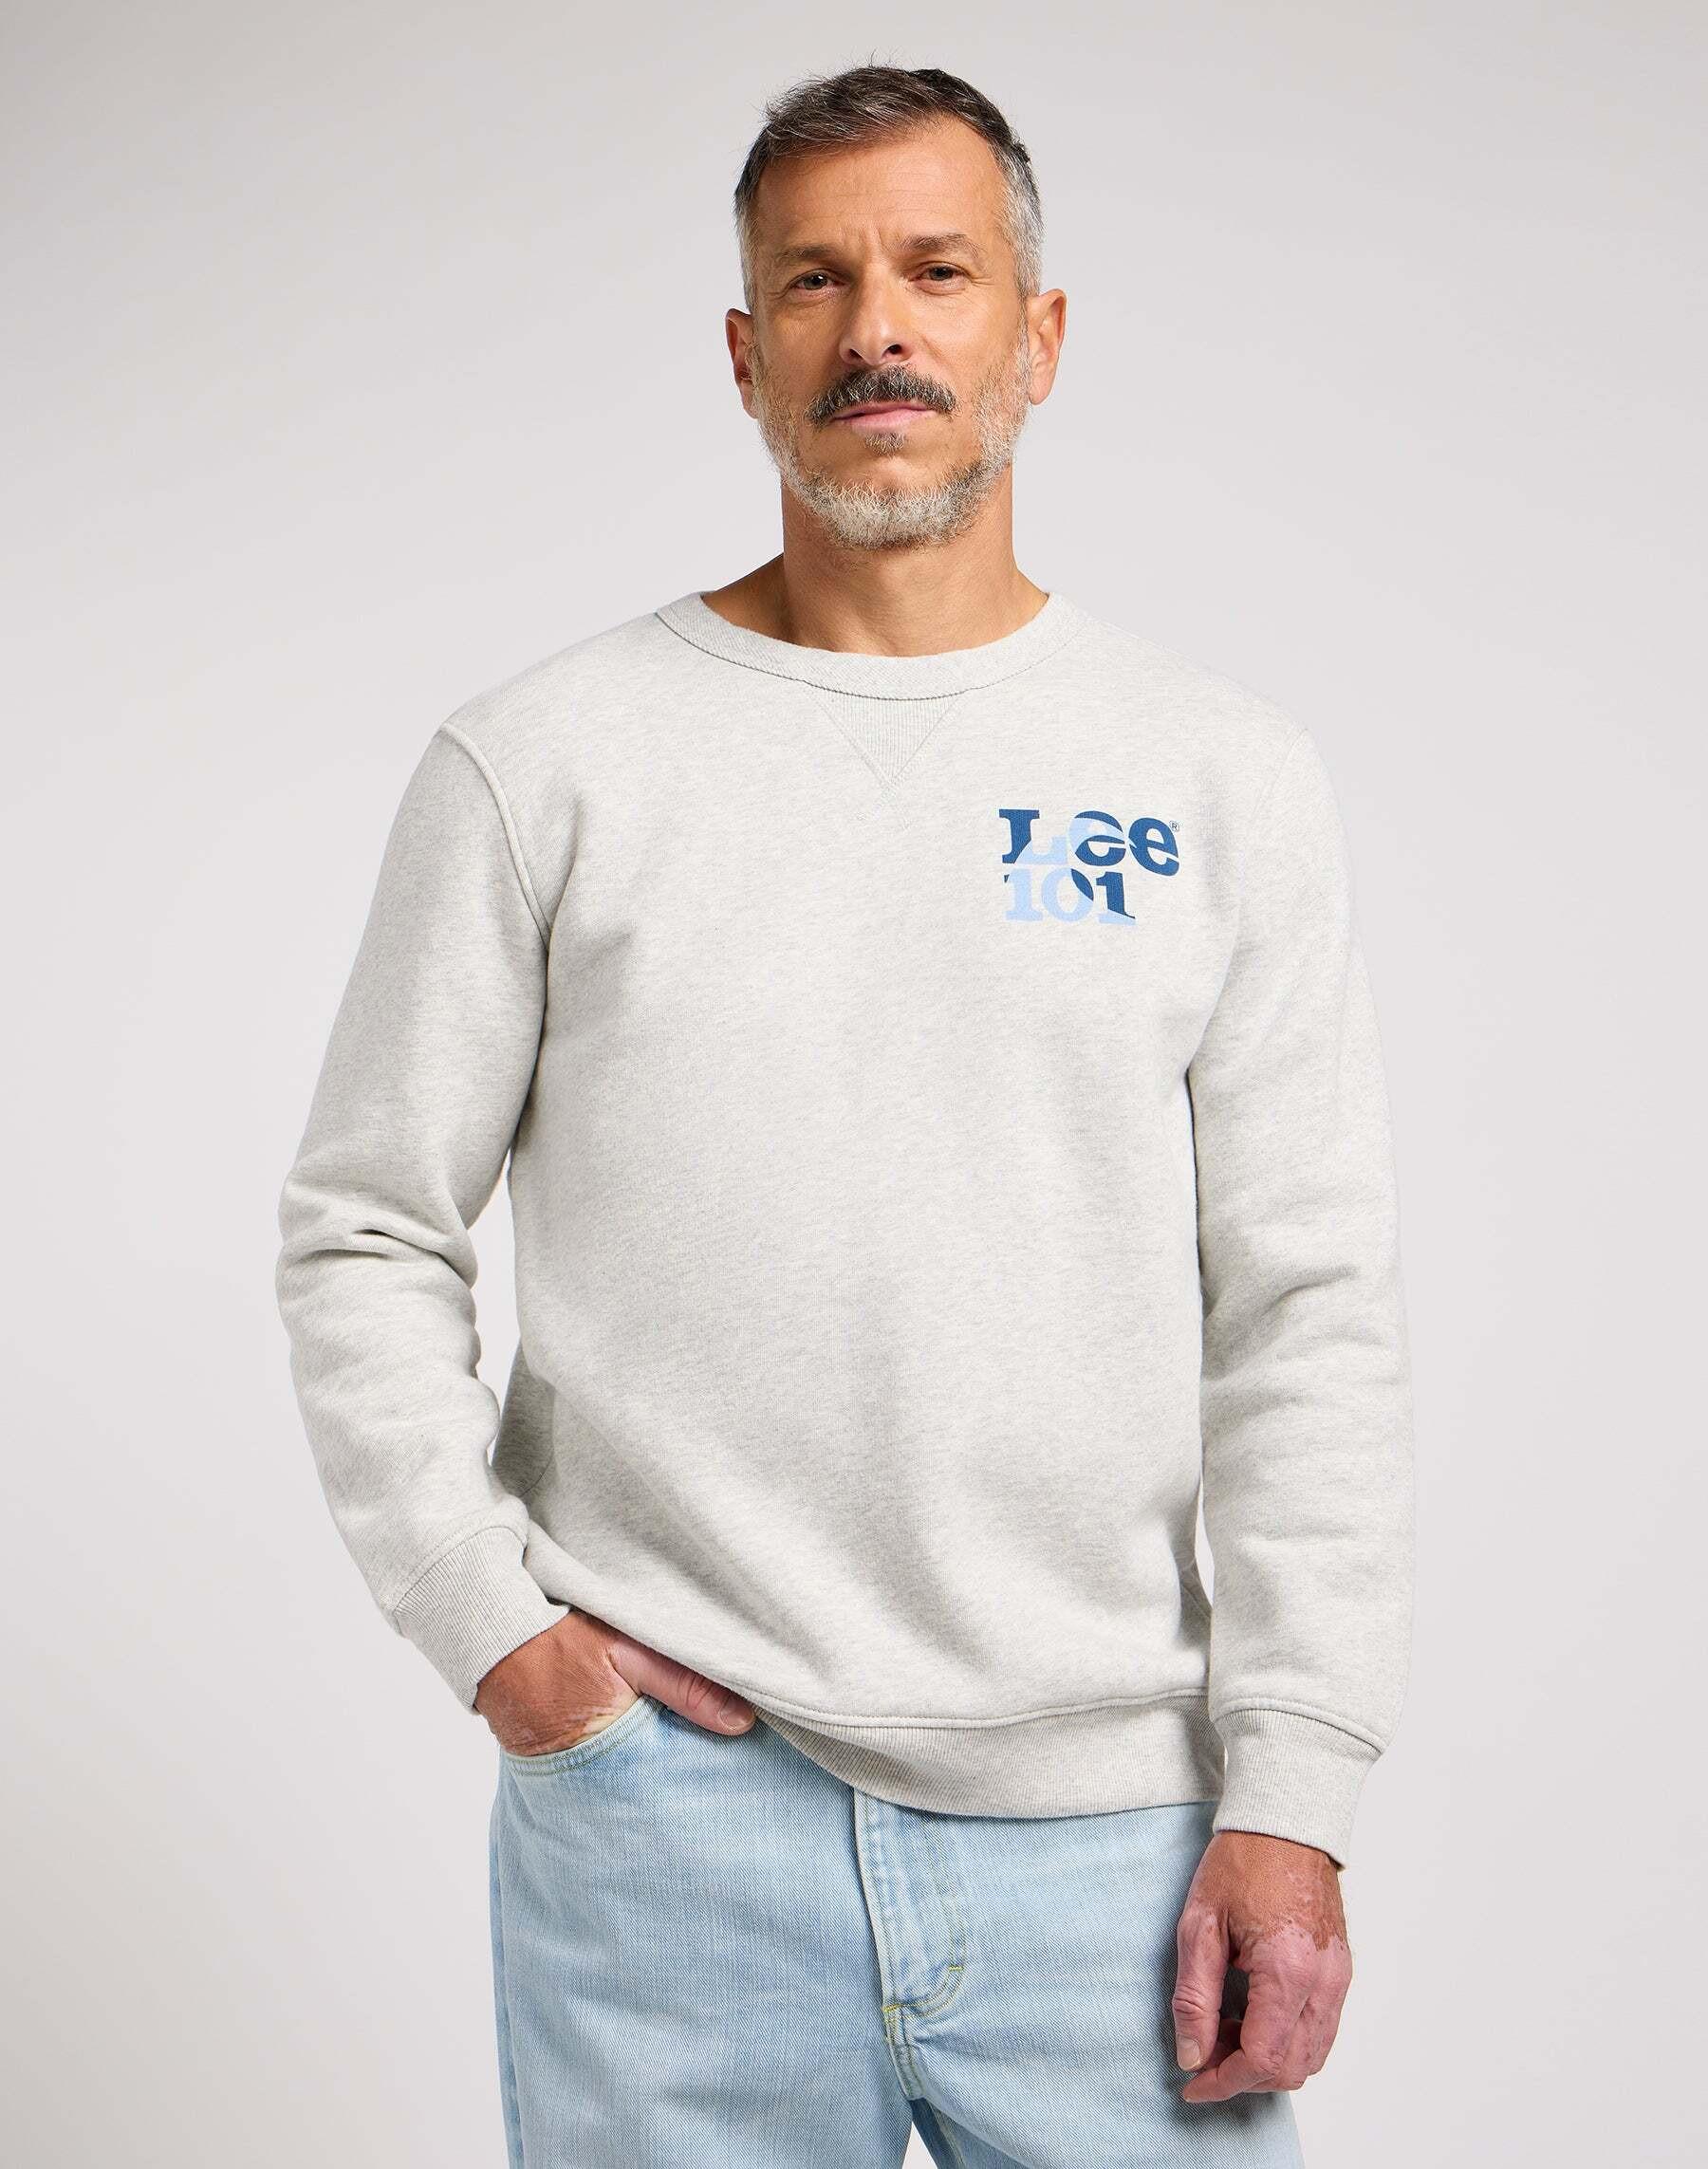 Sweatshirts 101 Rider Sweater Herren Taubengrau XL von Lee